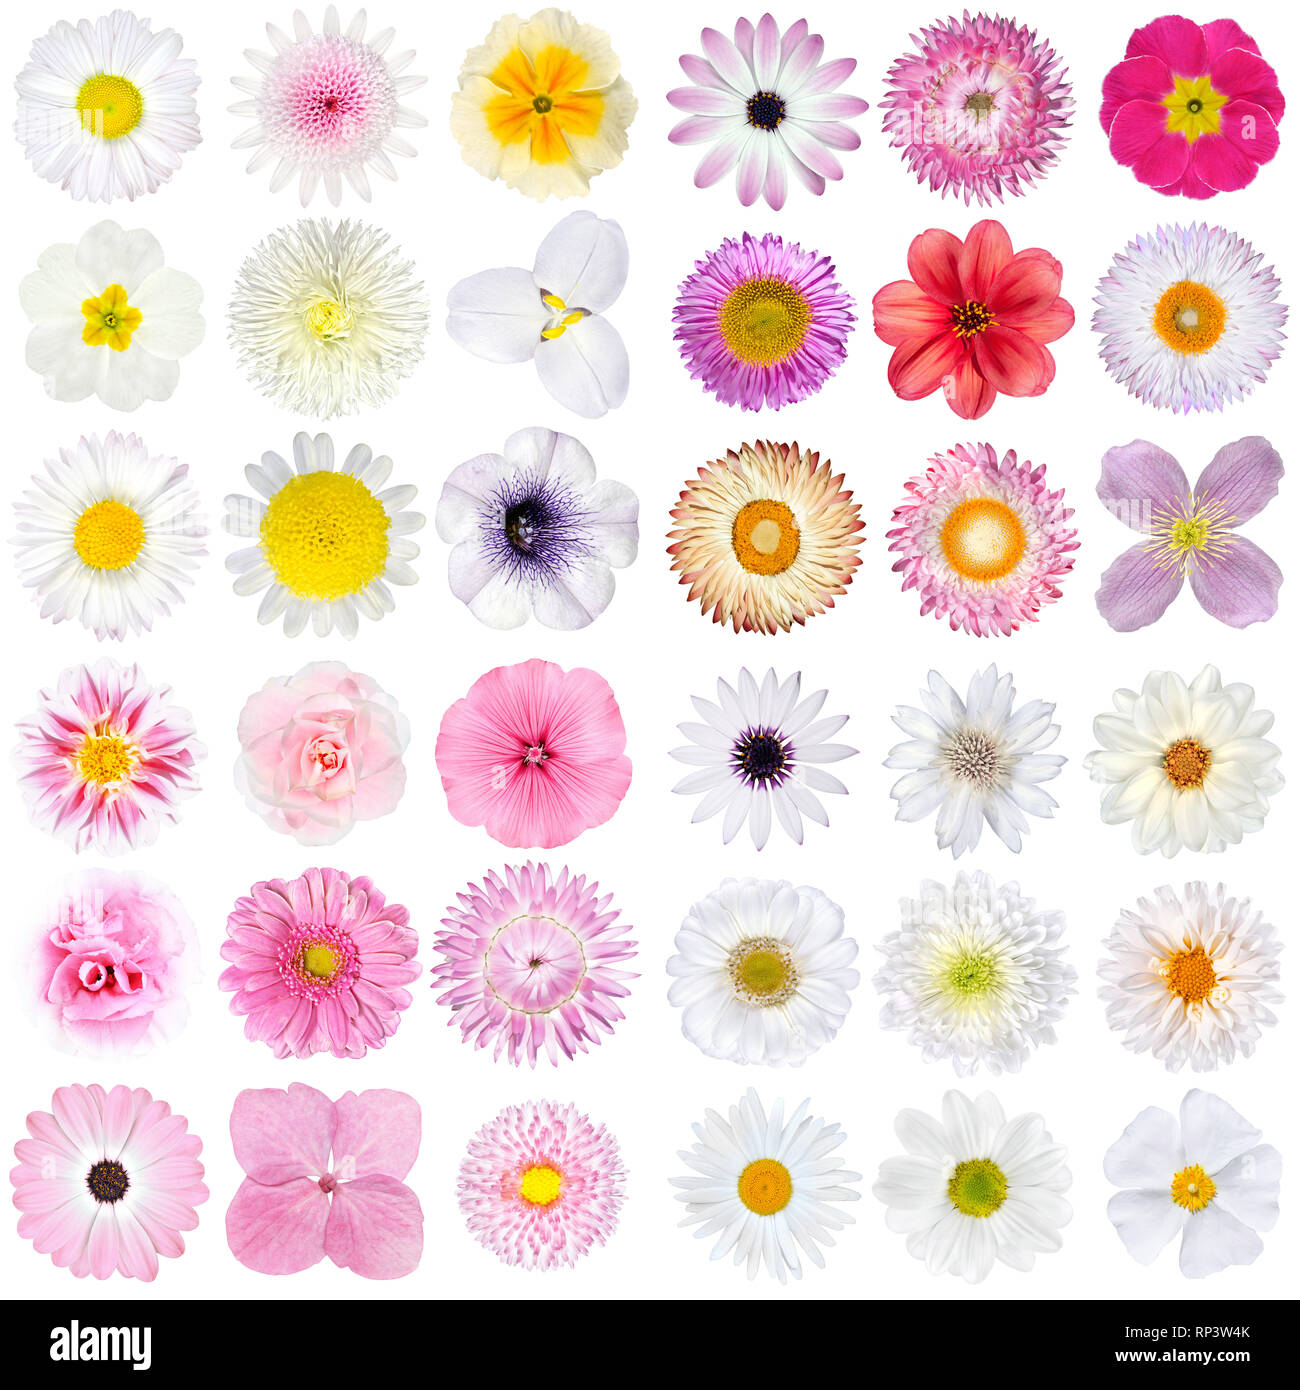 Große Auswahl von verschiedenen rosa und weißen Blumen und isoliert auf weißem Hintergrund. Blumen sind Rose, Dahlie, Ringelblume, zinnia, Strohblumen, Daisy, Stockfoto